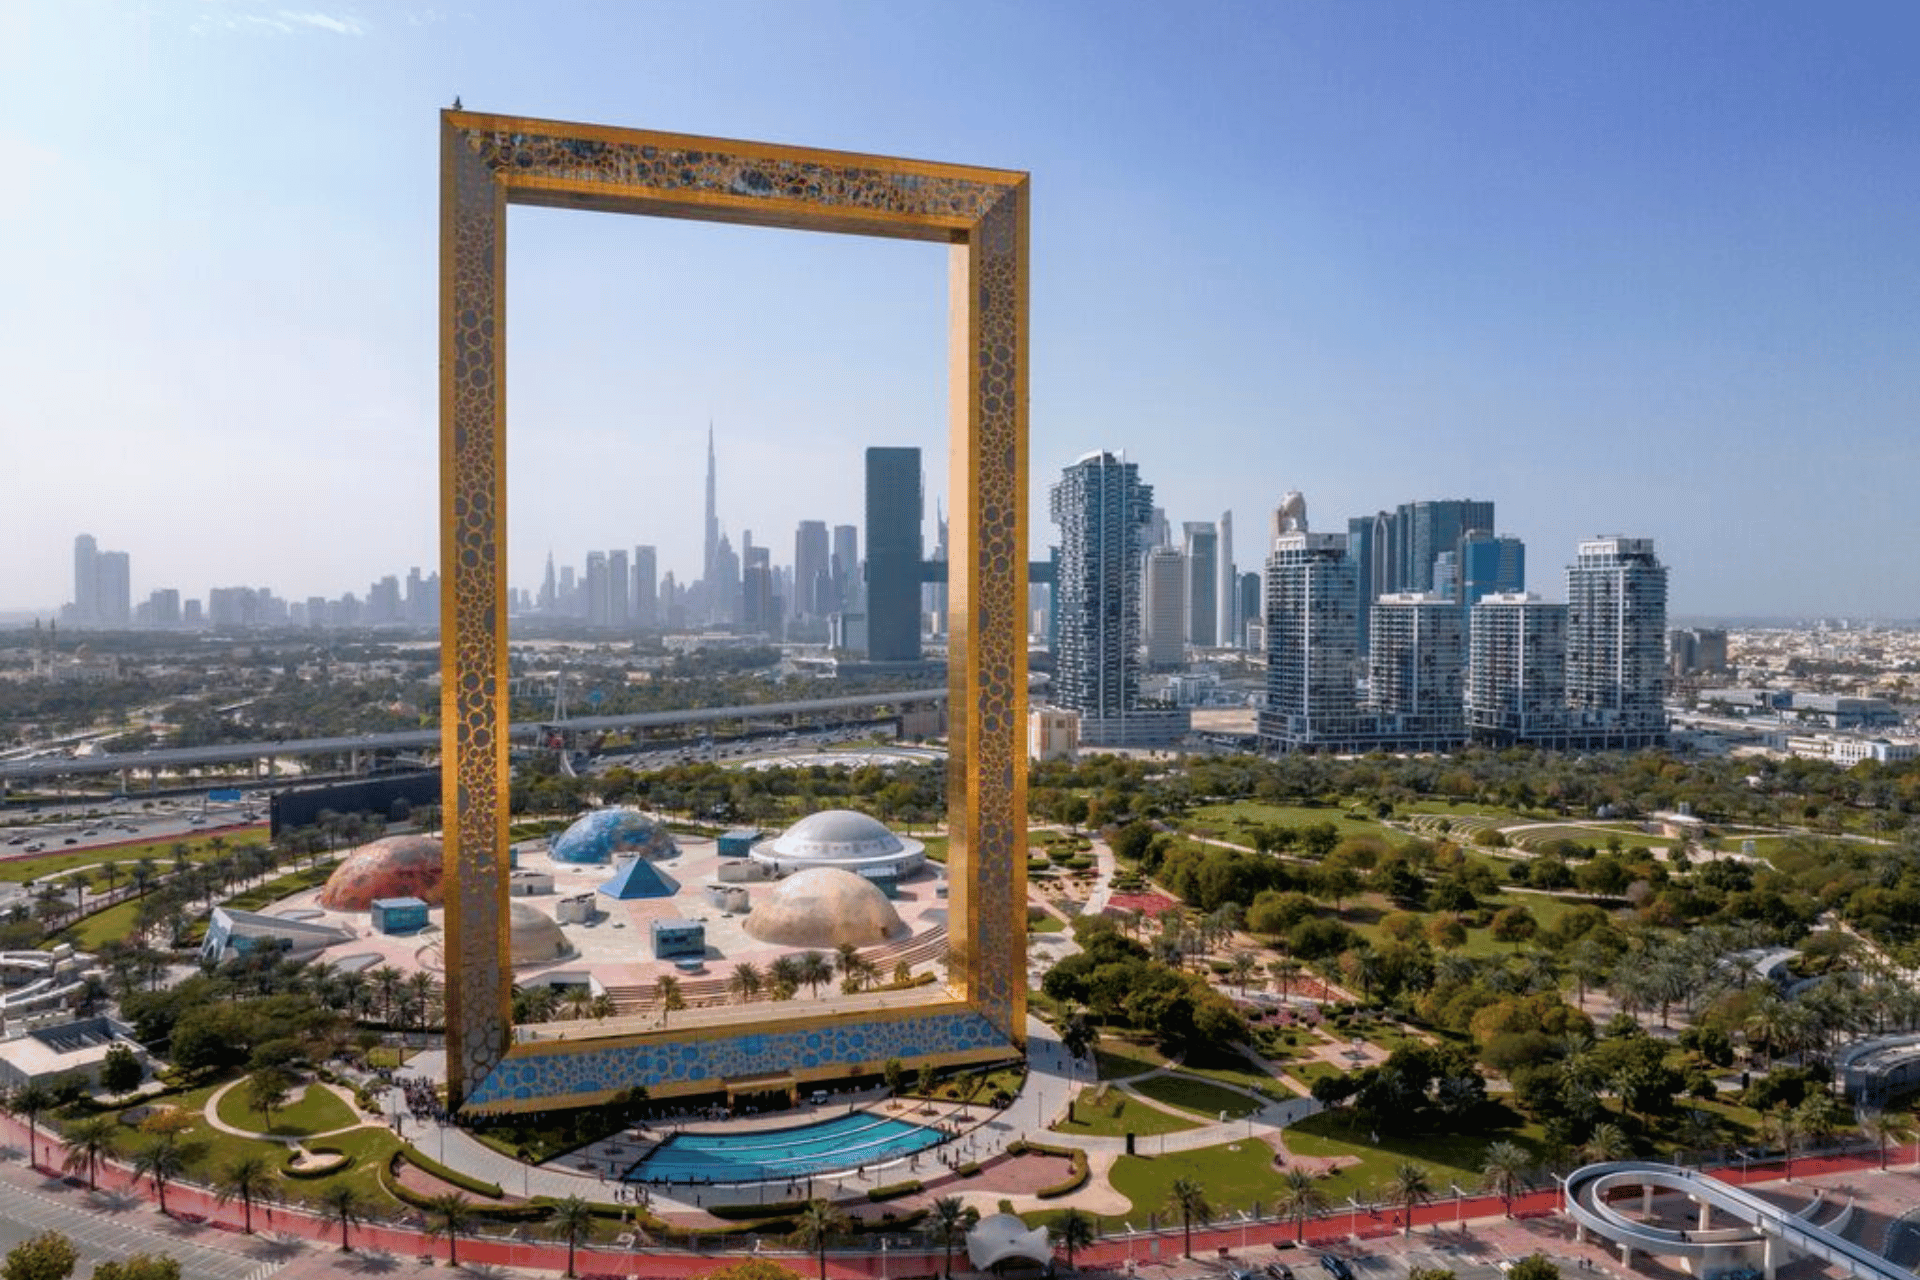 ©DubaiTourism The Dubai Frame